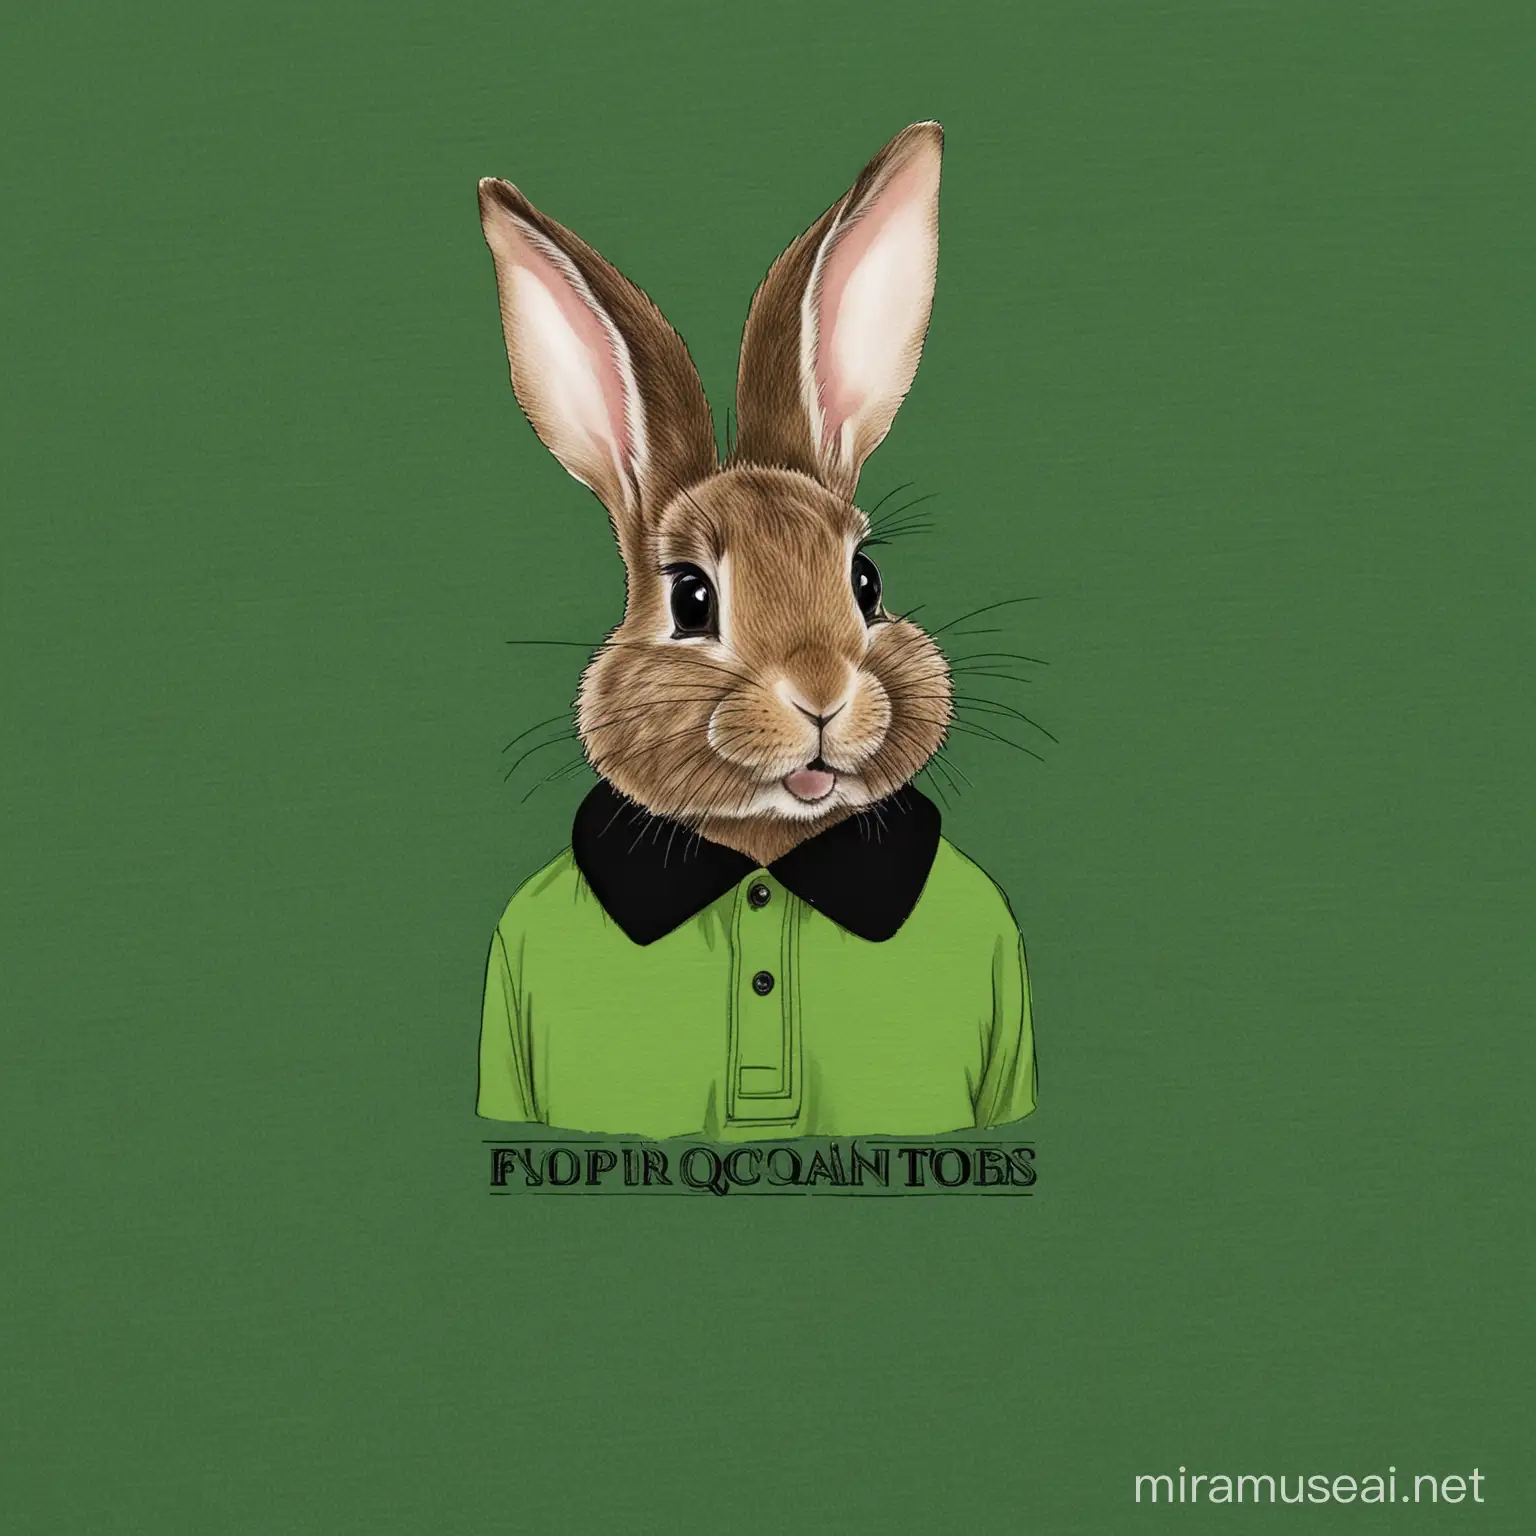 Potzebuję grafikę dla firmy z okazji wielkiej nocy. Myślałem na królikami z jakimś drewienkiem. Ważne aby były w zielonych koszulkach polo z czarnym kołnierzykiem. Koszulka nie może mieć żadnych nadruków tylko musi być cała zielona z tym czarnym kołnierzykiem